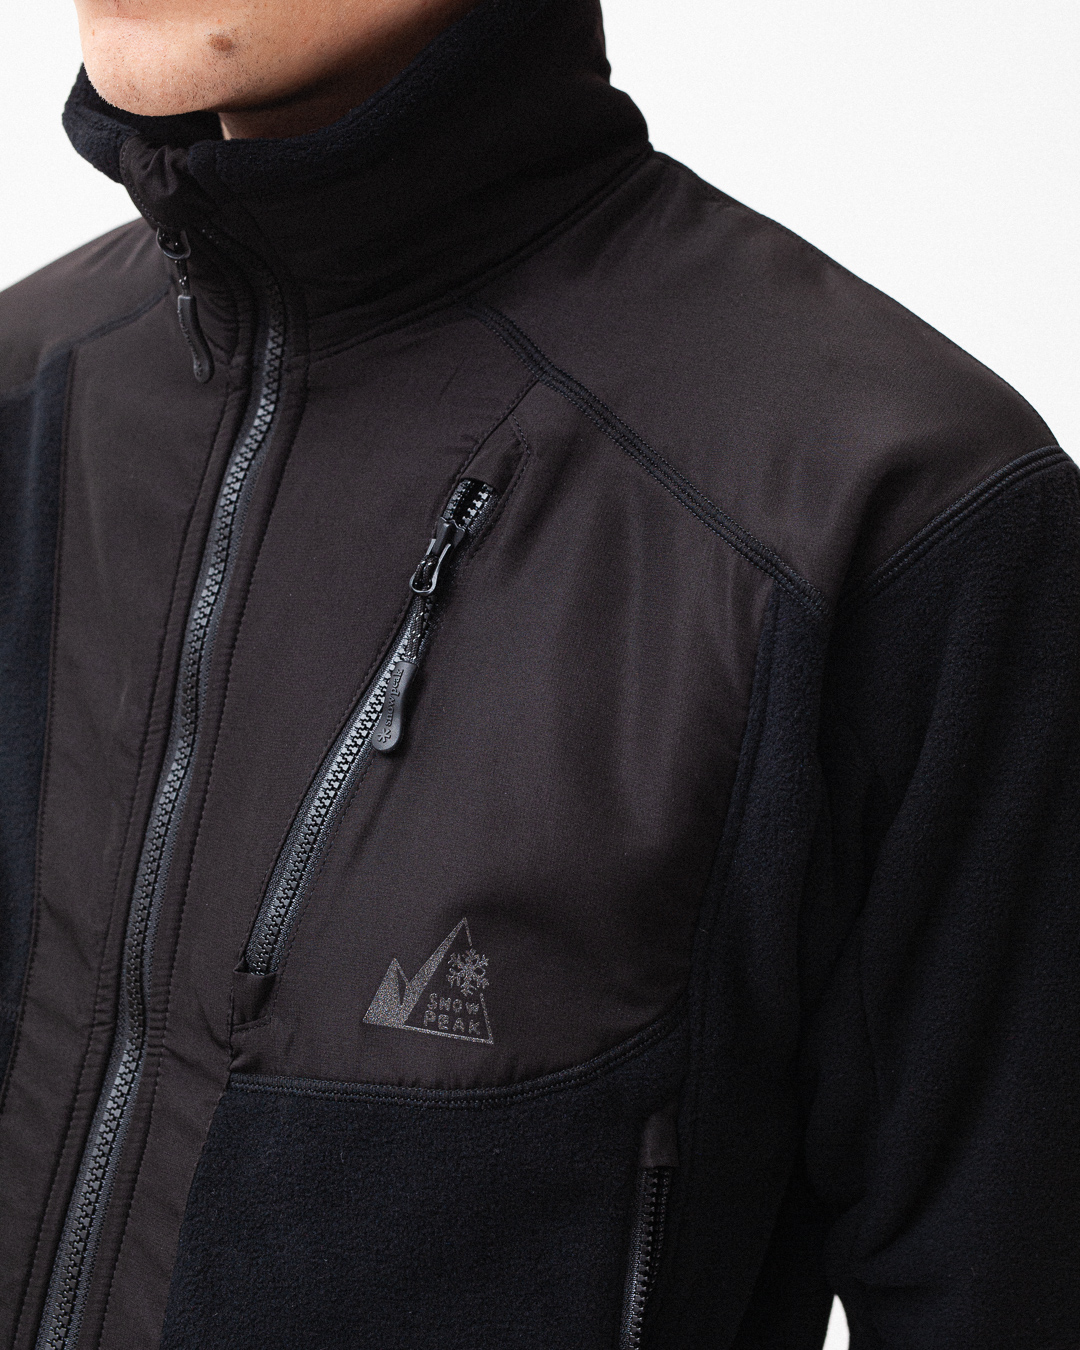 Norse Store  Shipping Worldwide - Snow Peak Fleece Hybrid Jacket